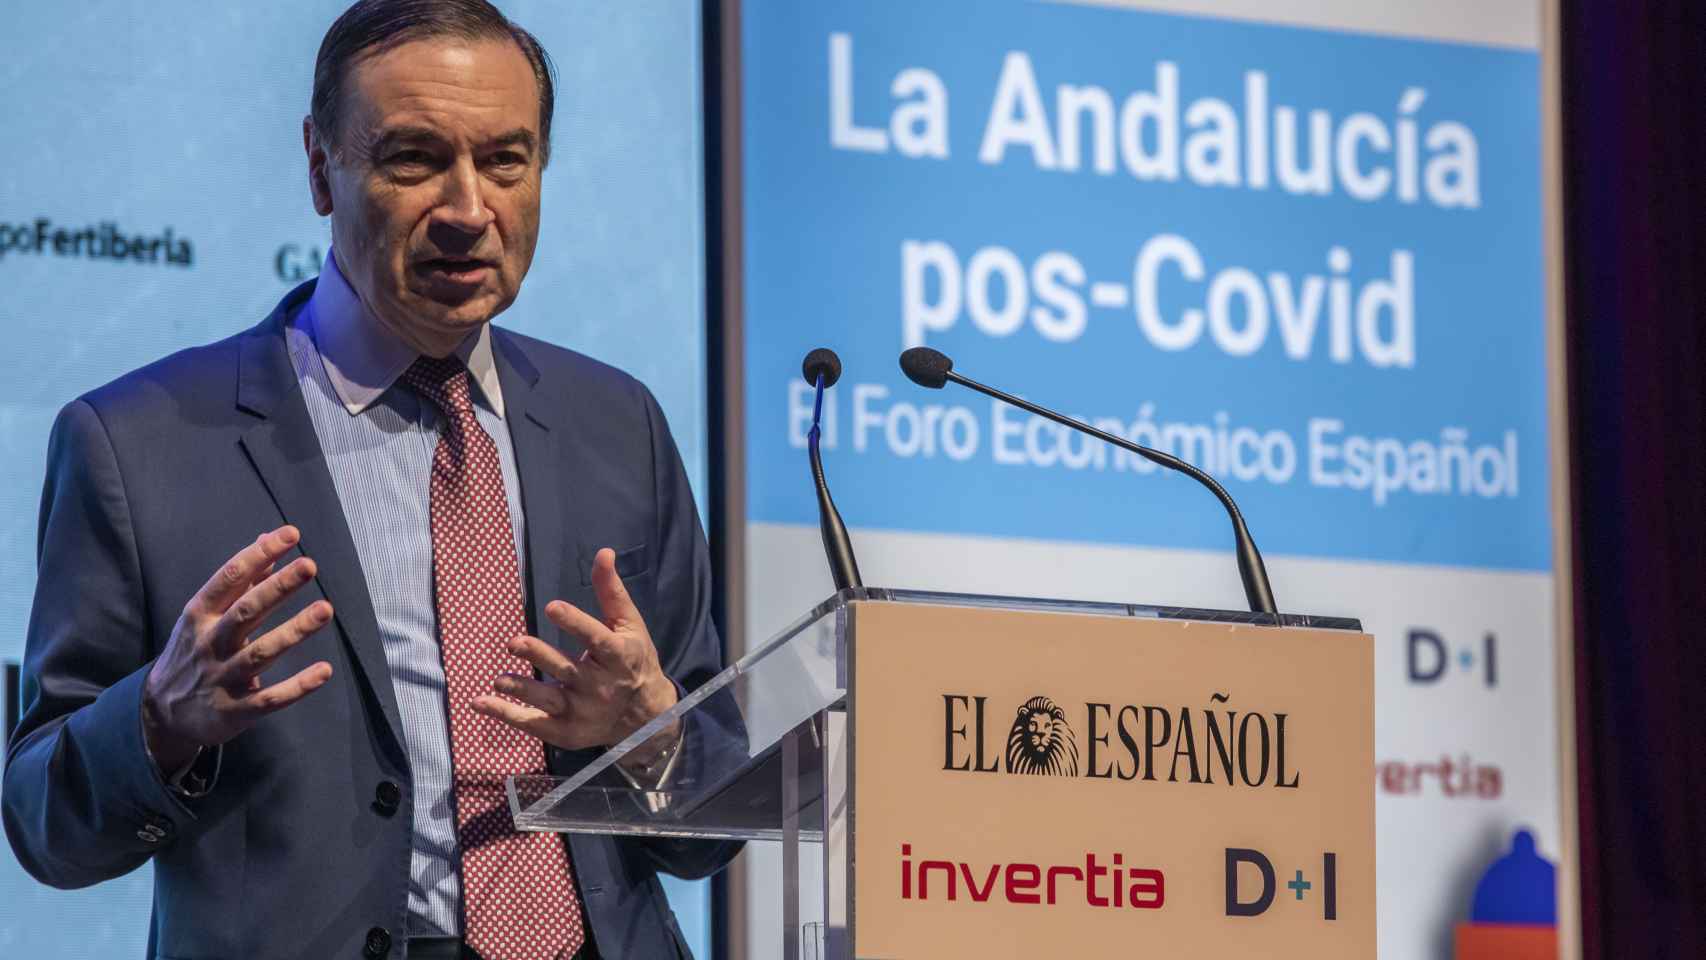 Pedro J. Ramírez, director y presidente ejecutivo de EL ESPAÑOL, durante la inauguración del Foro Económico Español 'La Andalucía pos-Covid'.